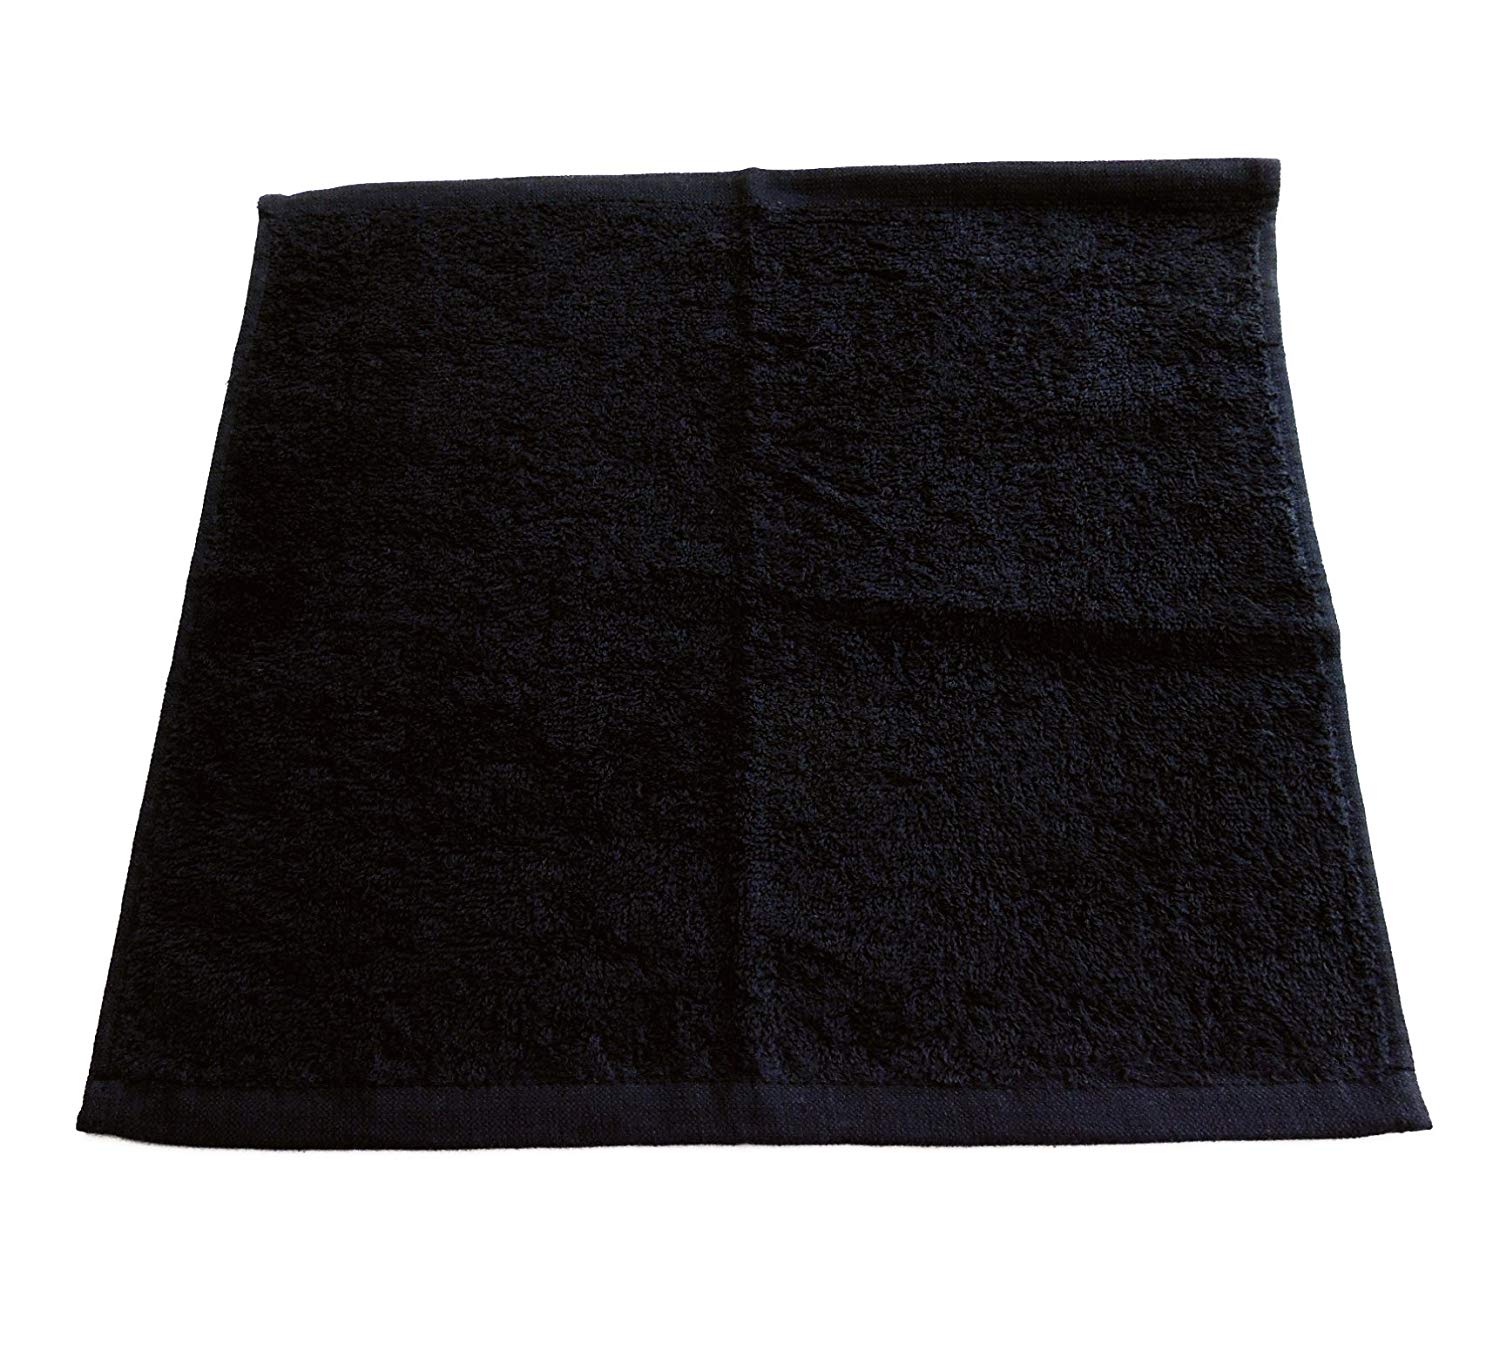 おしぼり ハンドタオル（黒) ブラック 120匁 60枚セット